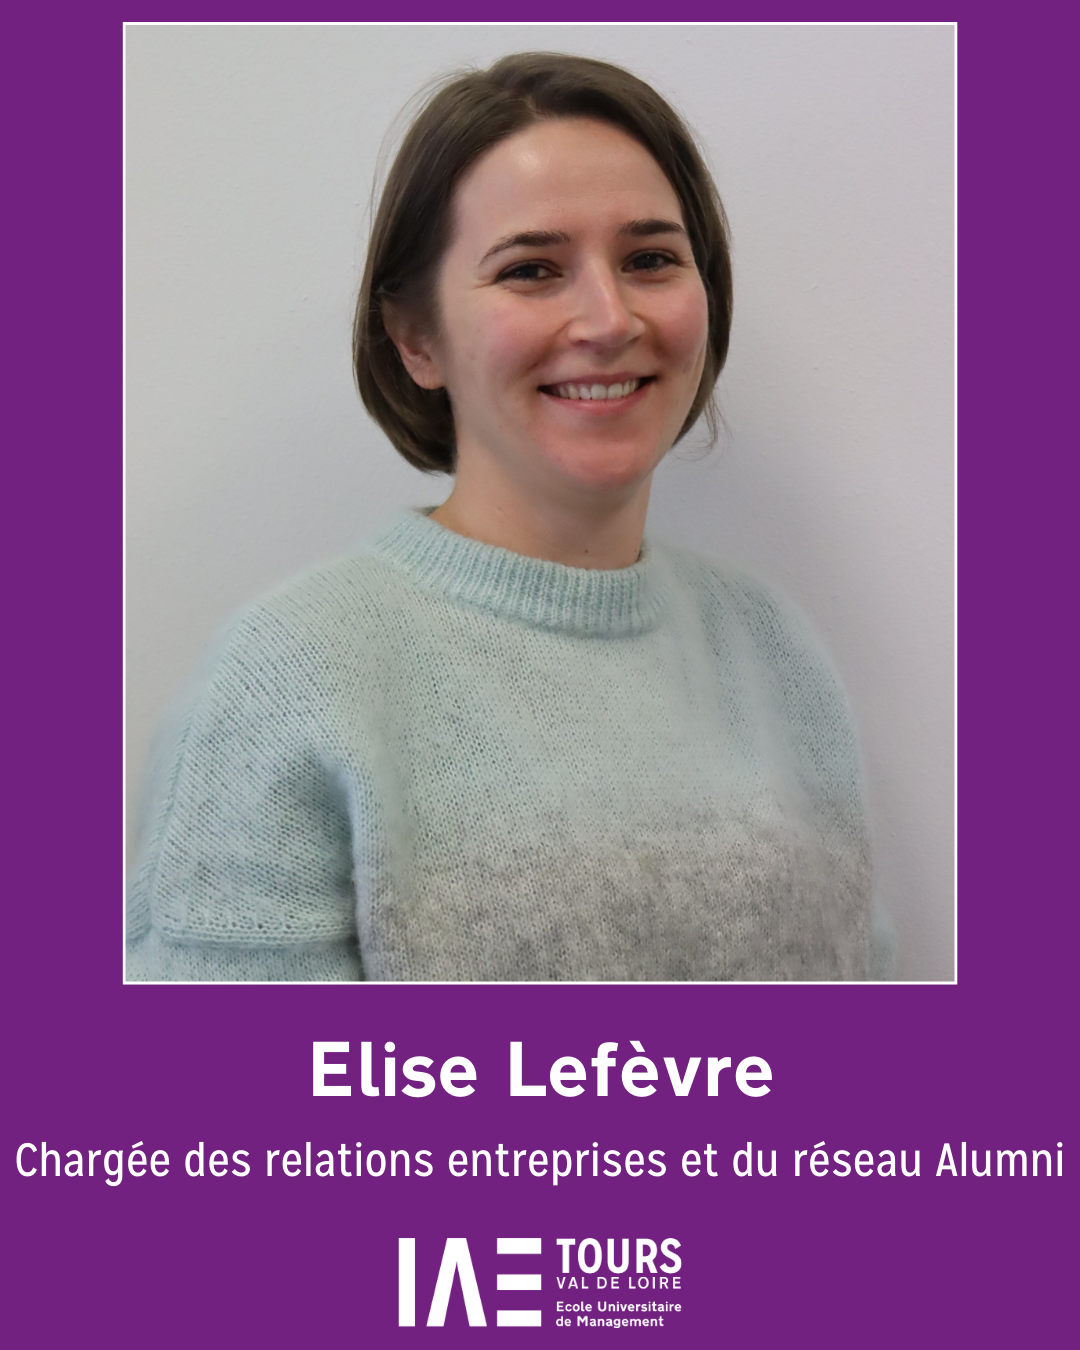 Elise Lefèvre